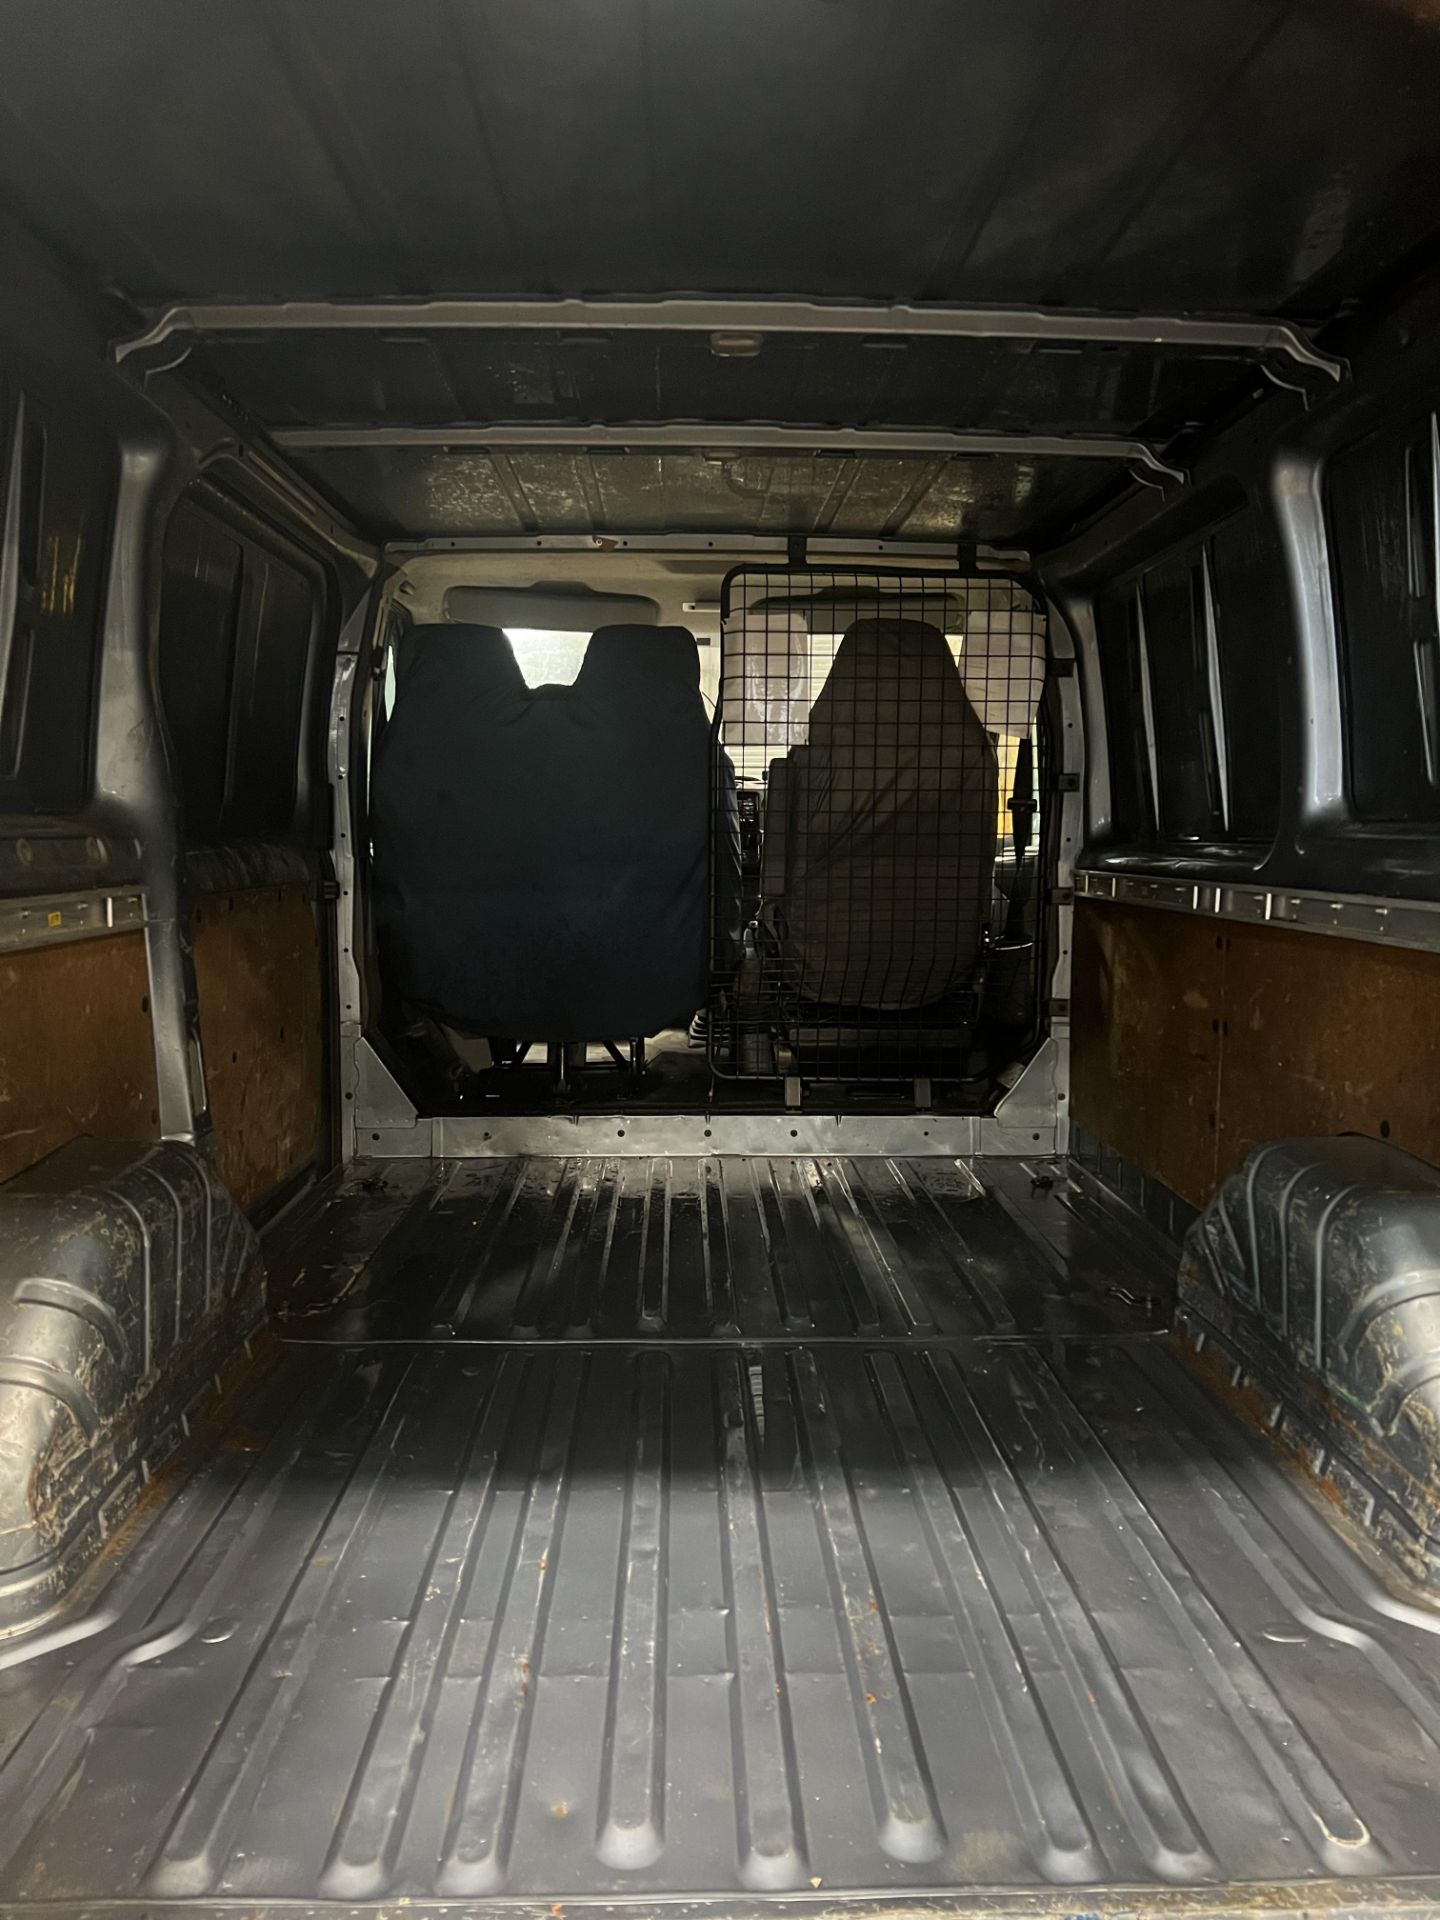 Ford Transit Van - Image 5 of 13